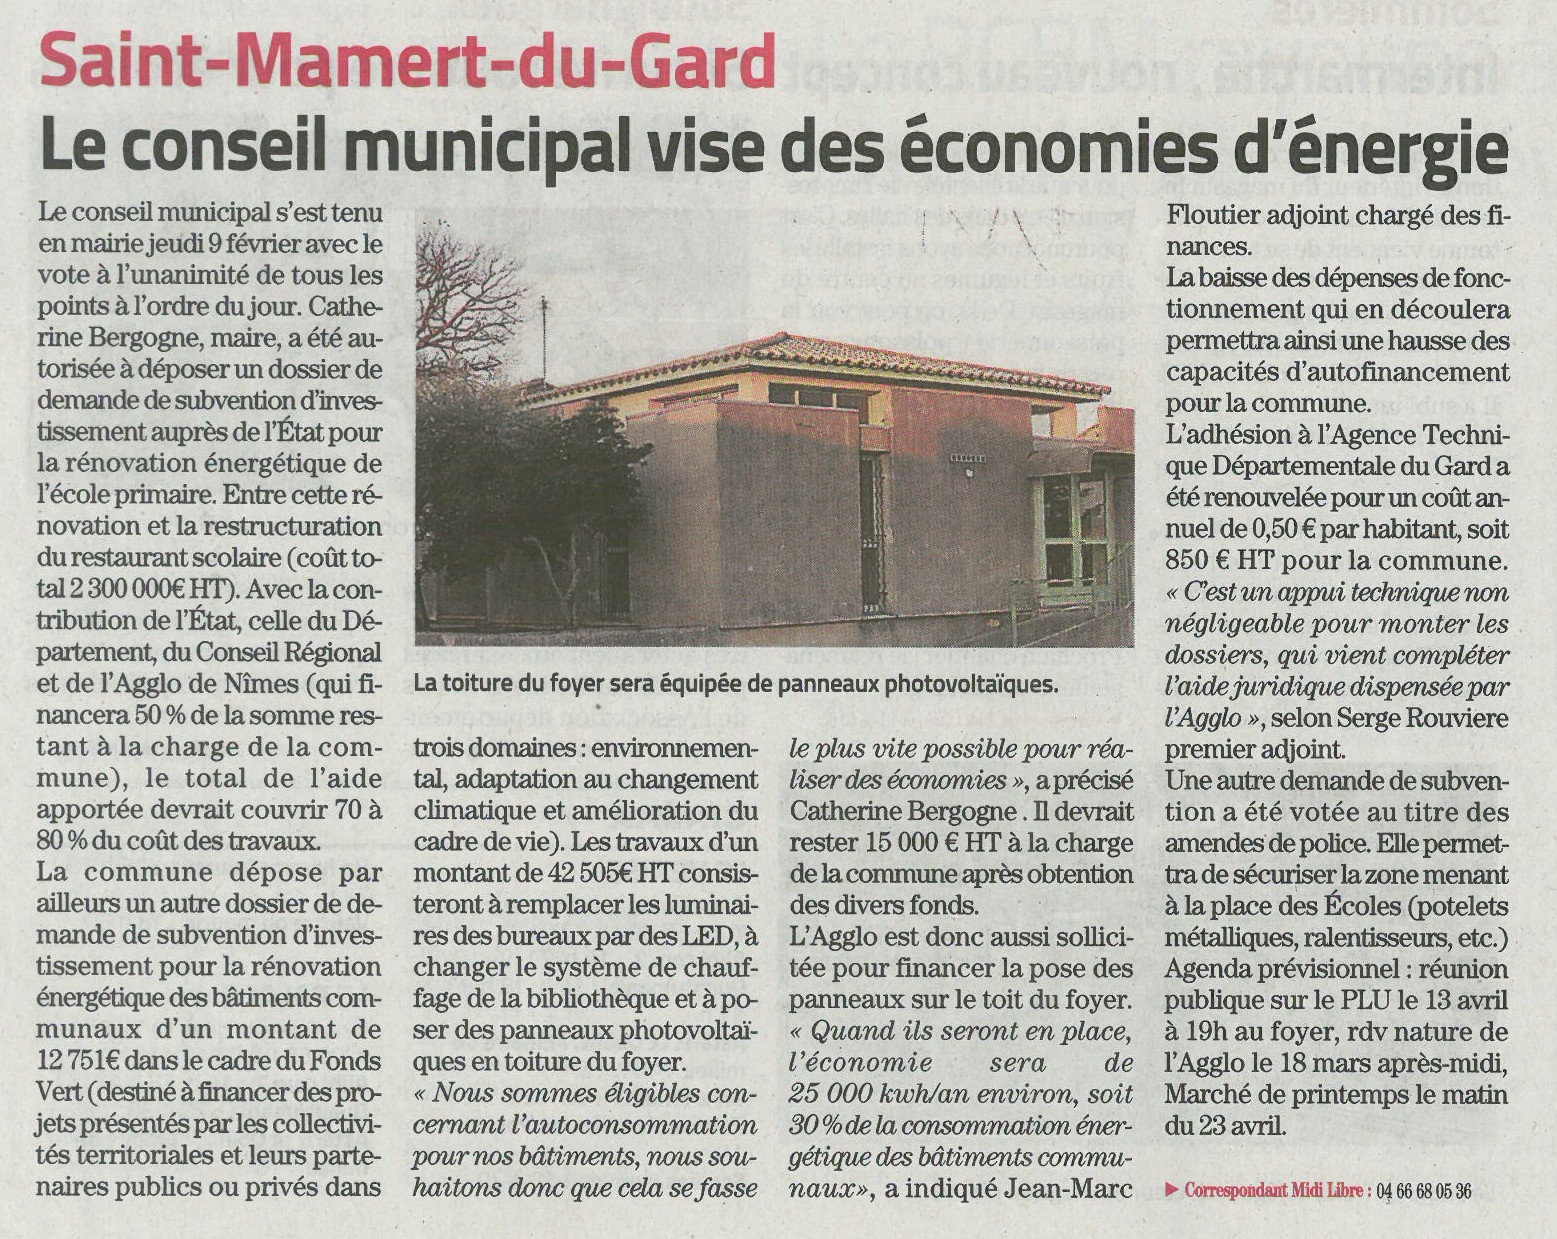 Saint-Mamert-du-Gard. Économie d'énergie